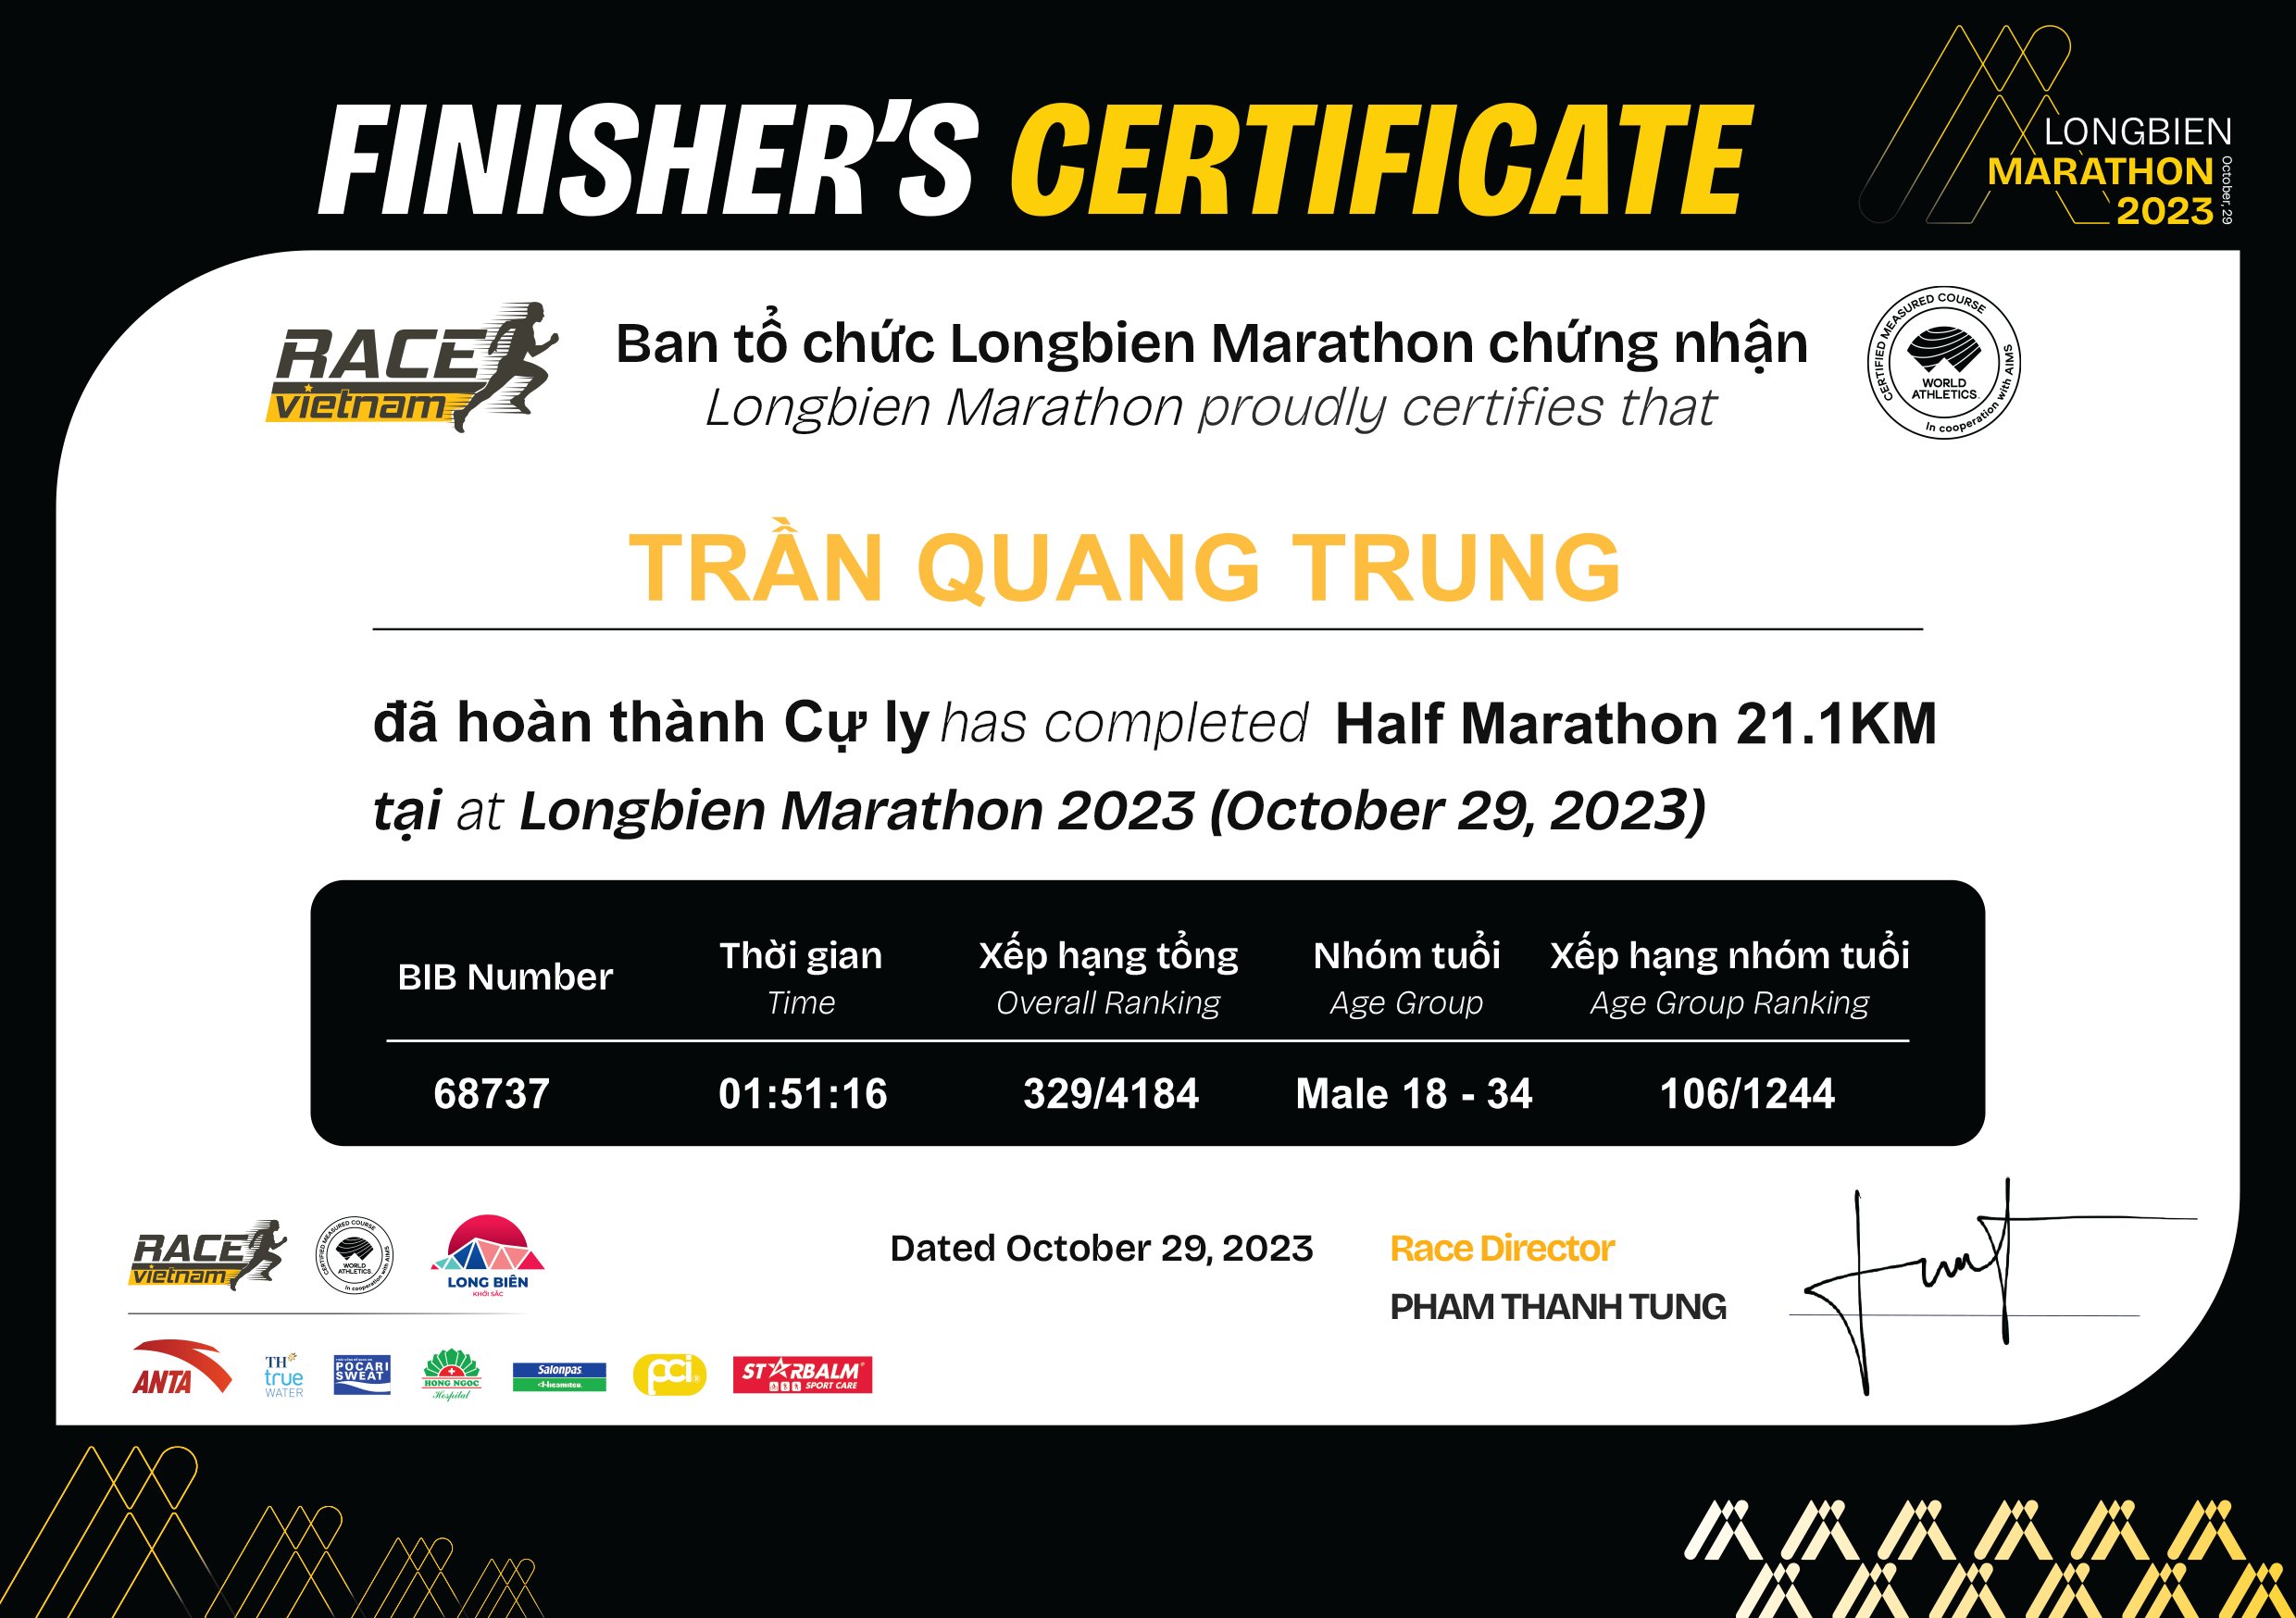 68737 - Trần Quang Trung